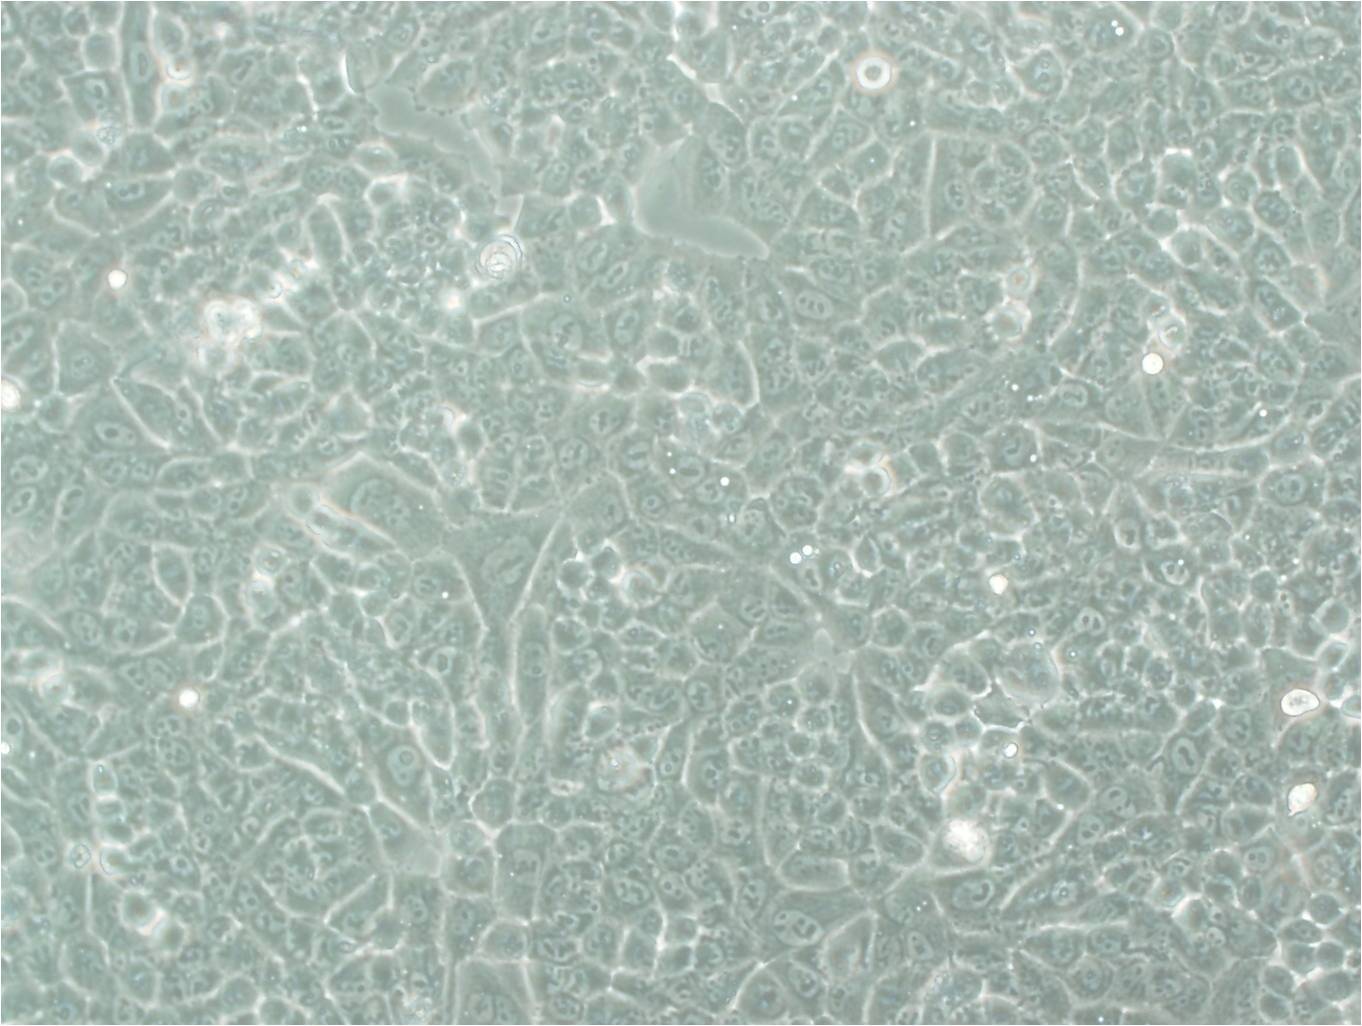 MC3T3-E1 Subclone 4小鼠原成骨复苏细胞(附STR鉴定报告)